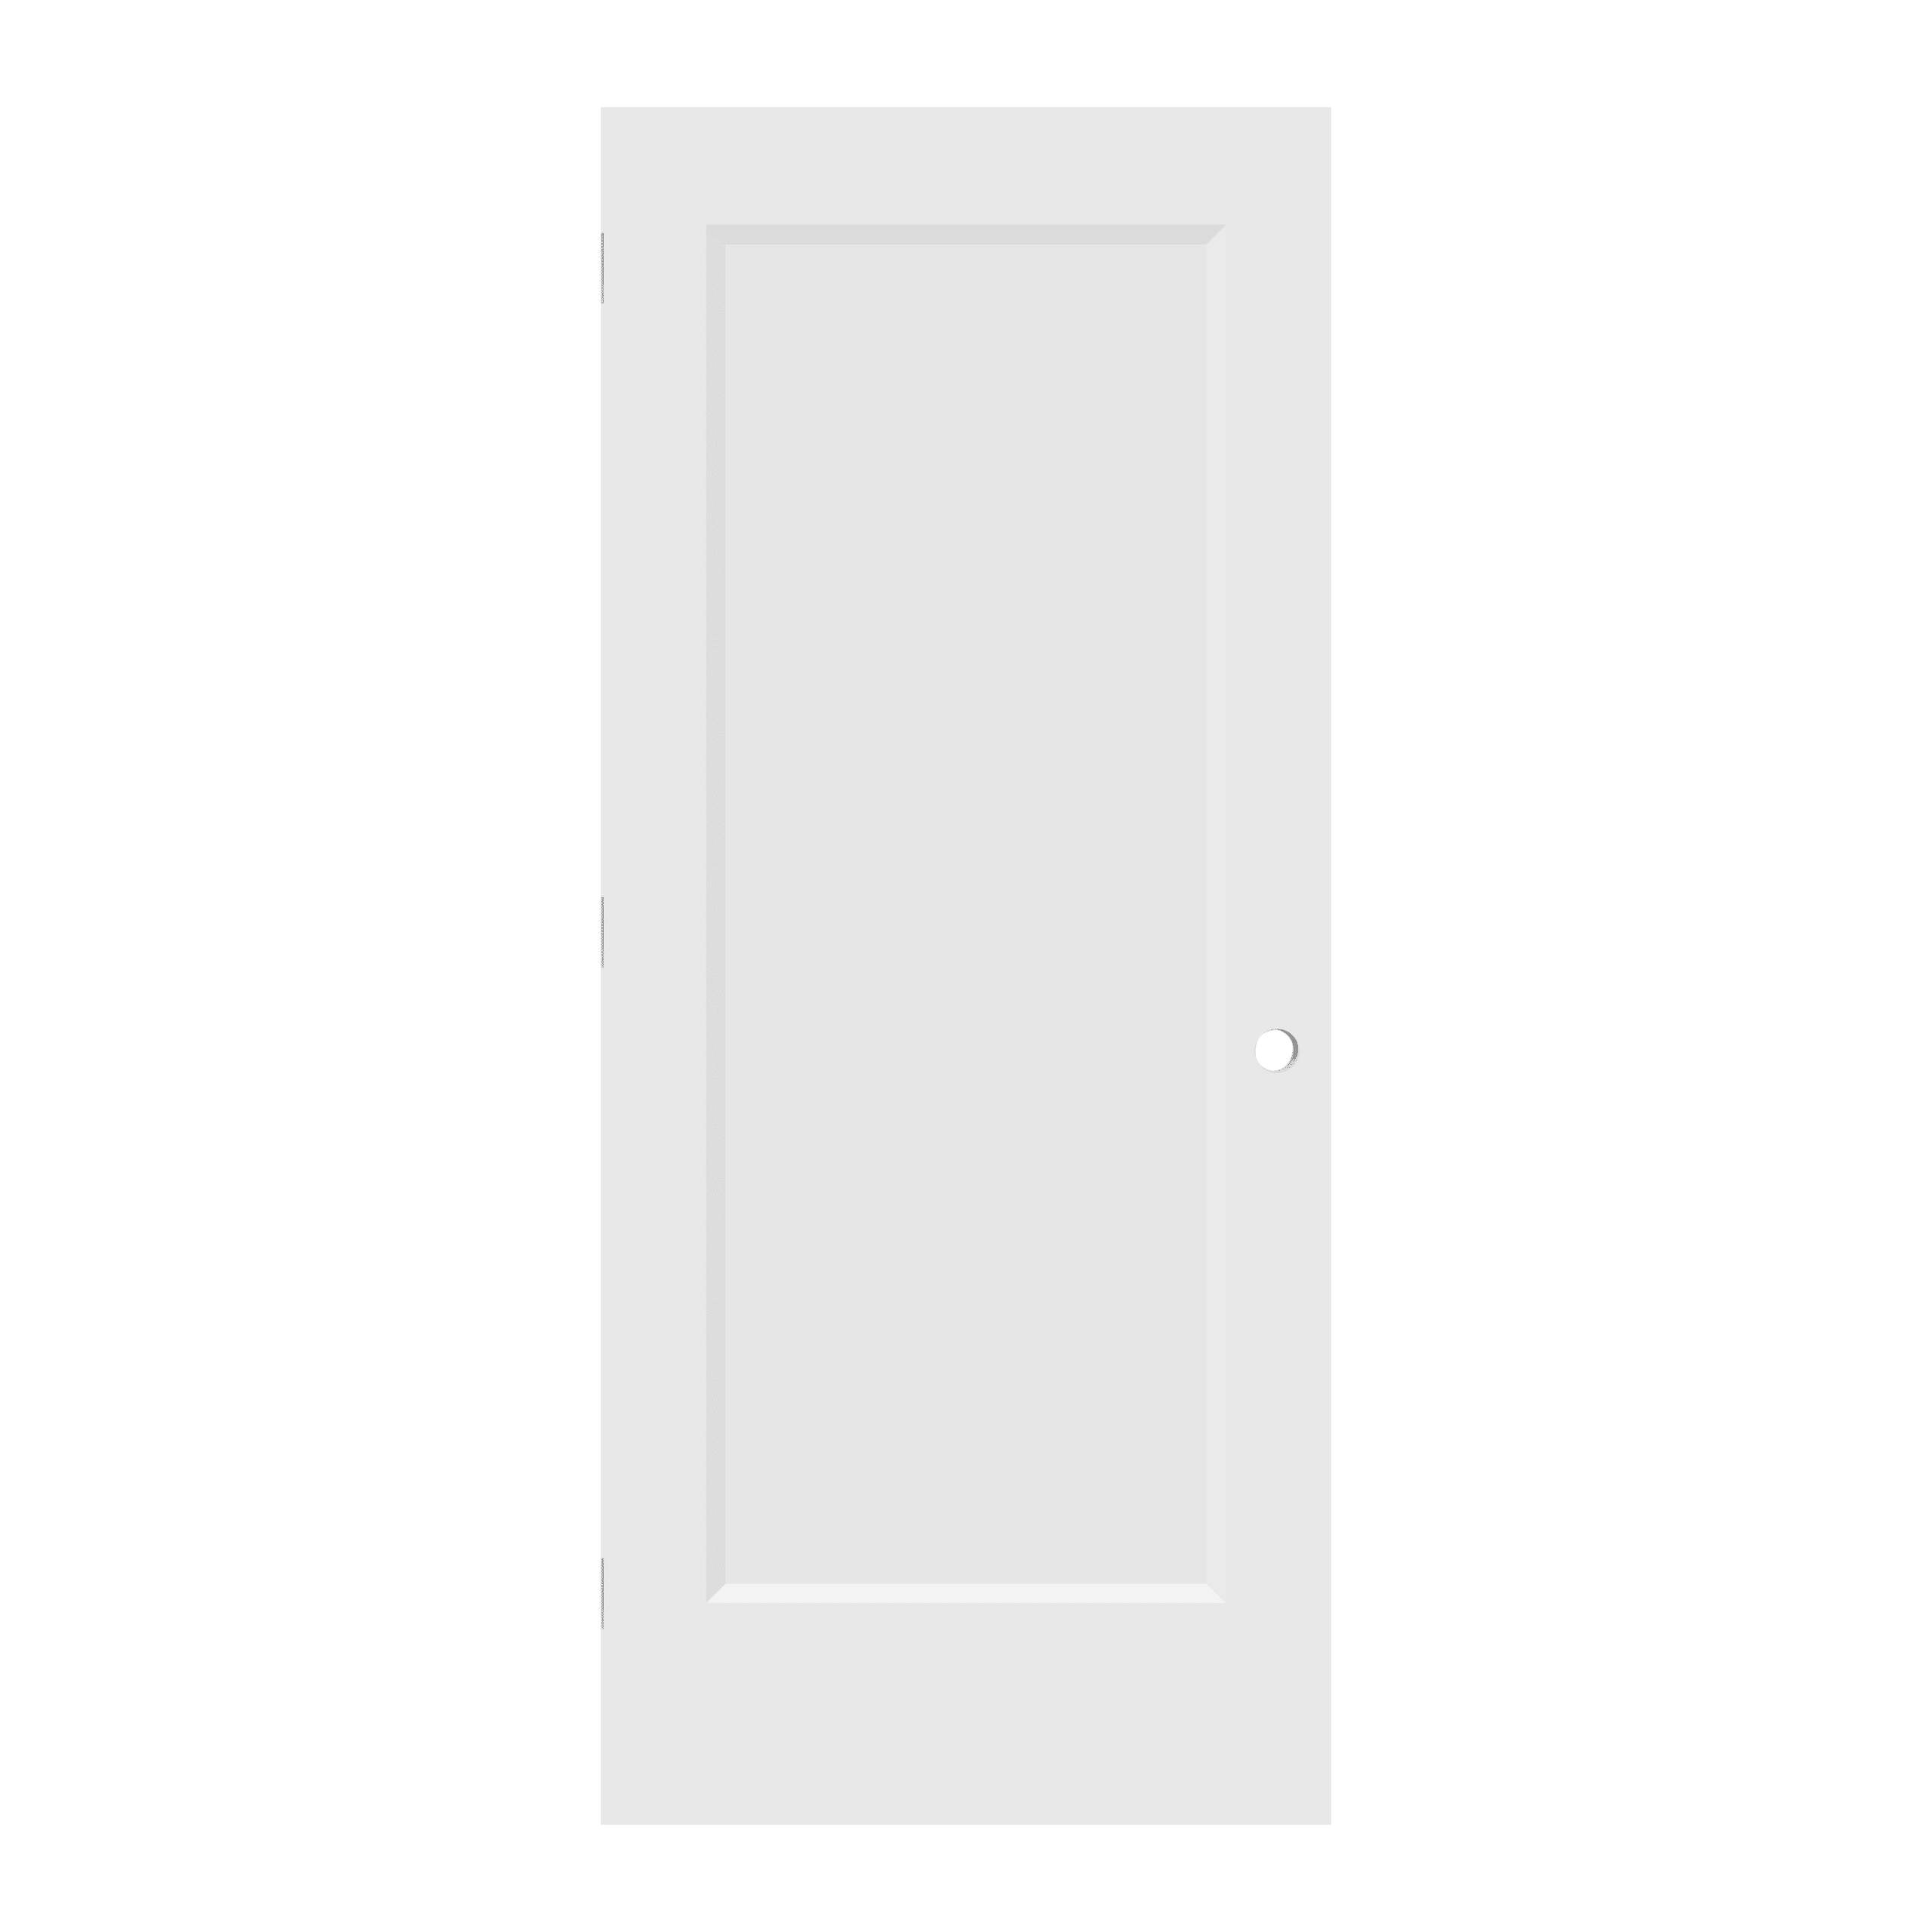 DOOR HINGE FOR PRE MACHINED DOORS 3 1/2" X 3 1/2" BLACK